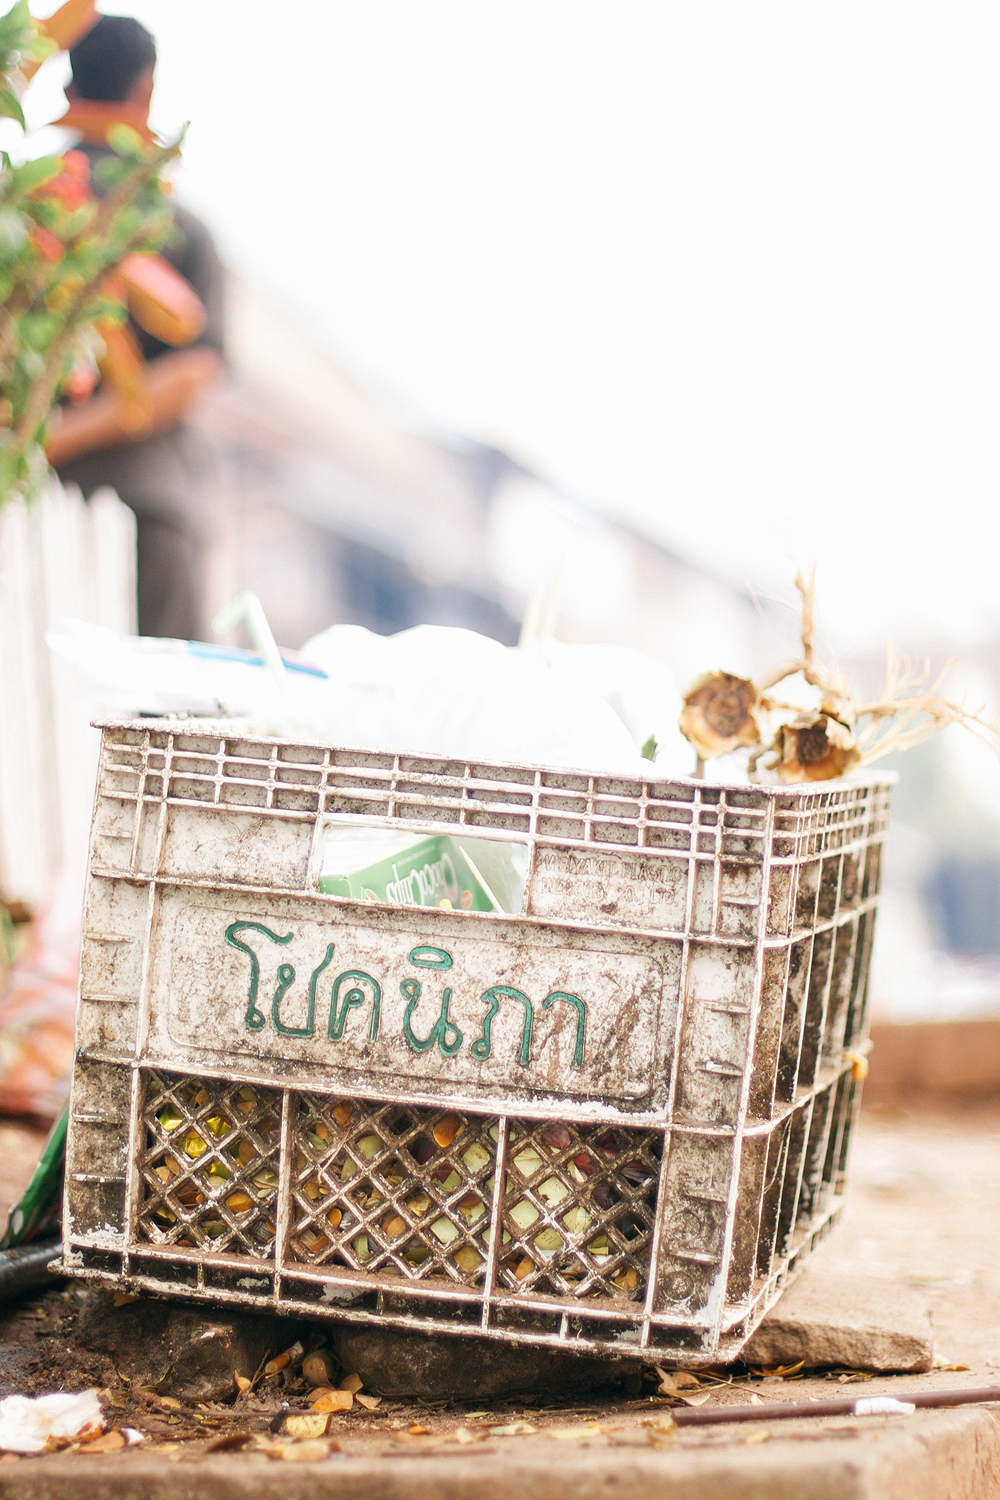 Plastic Crate in Luang Prabang